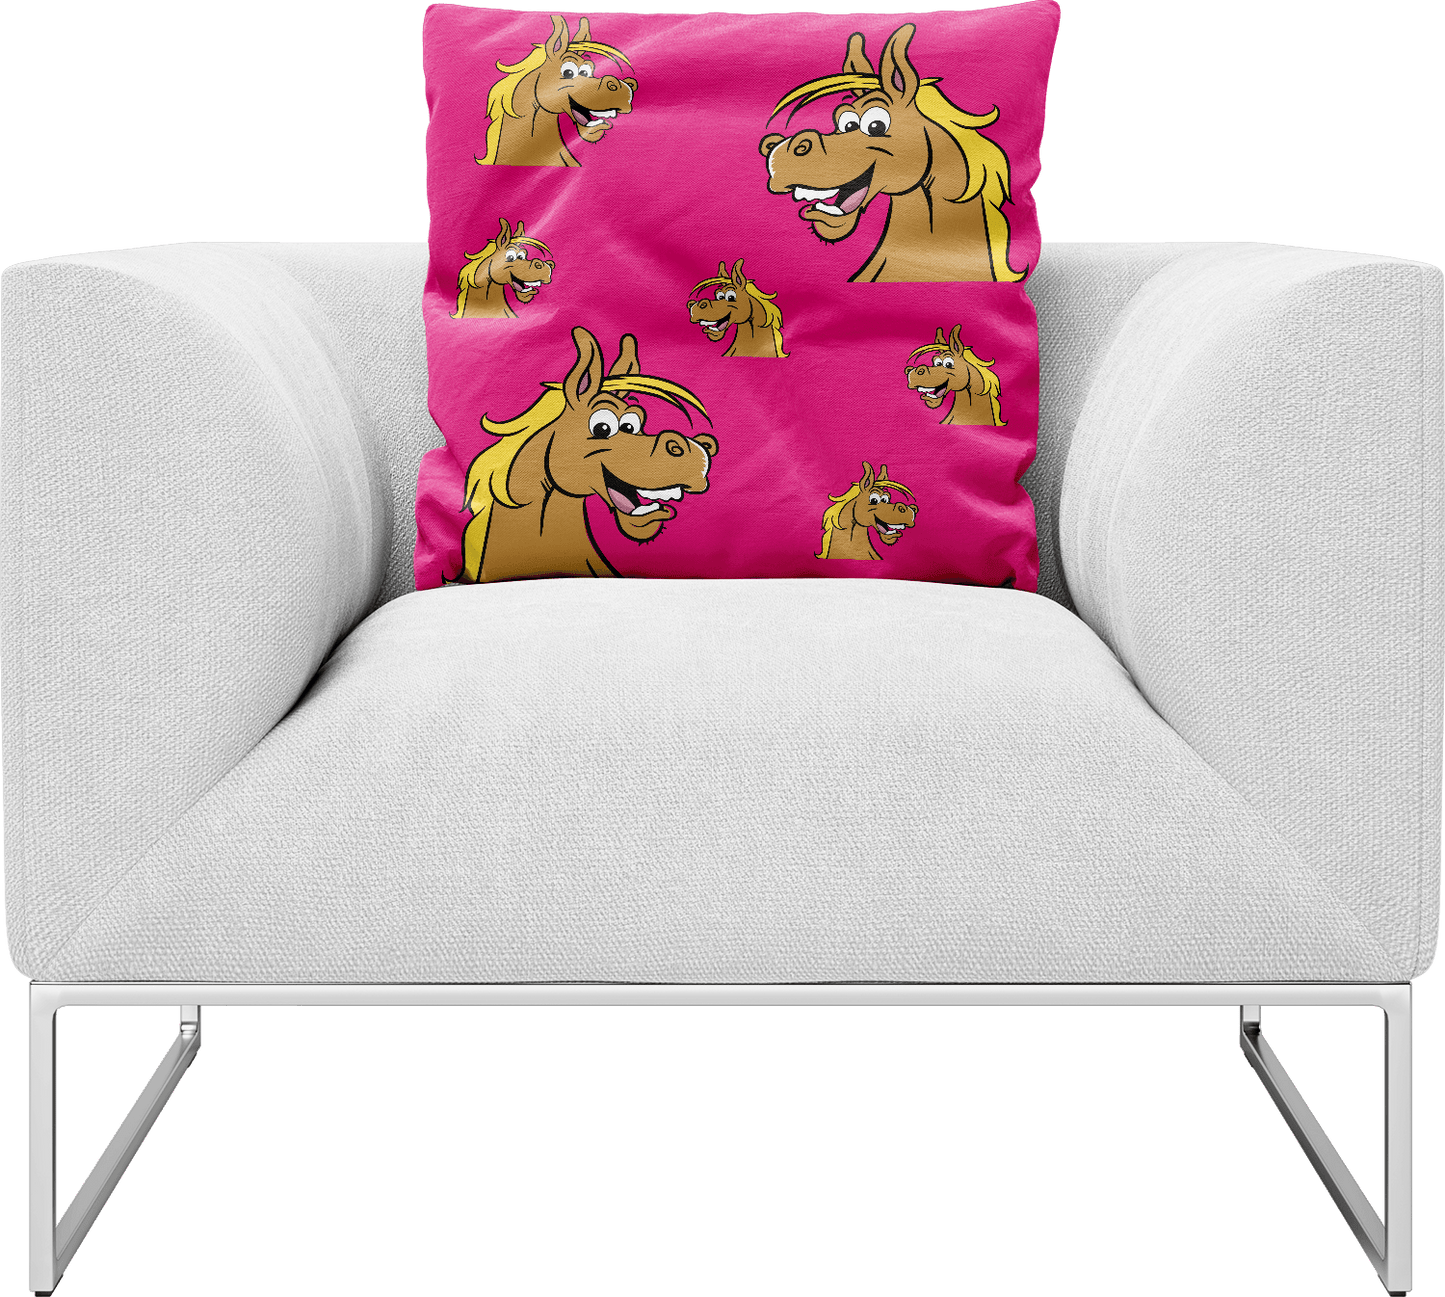 Hero Horse Pillows Cushions - fungear.com.au